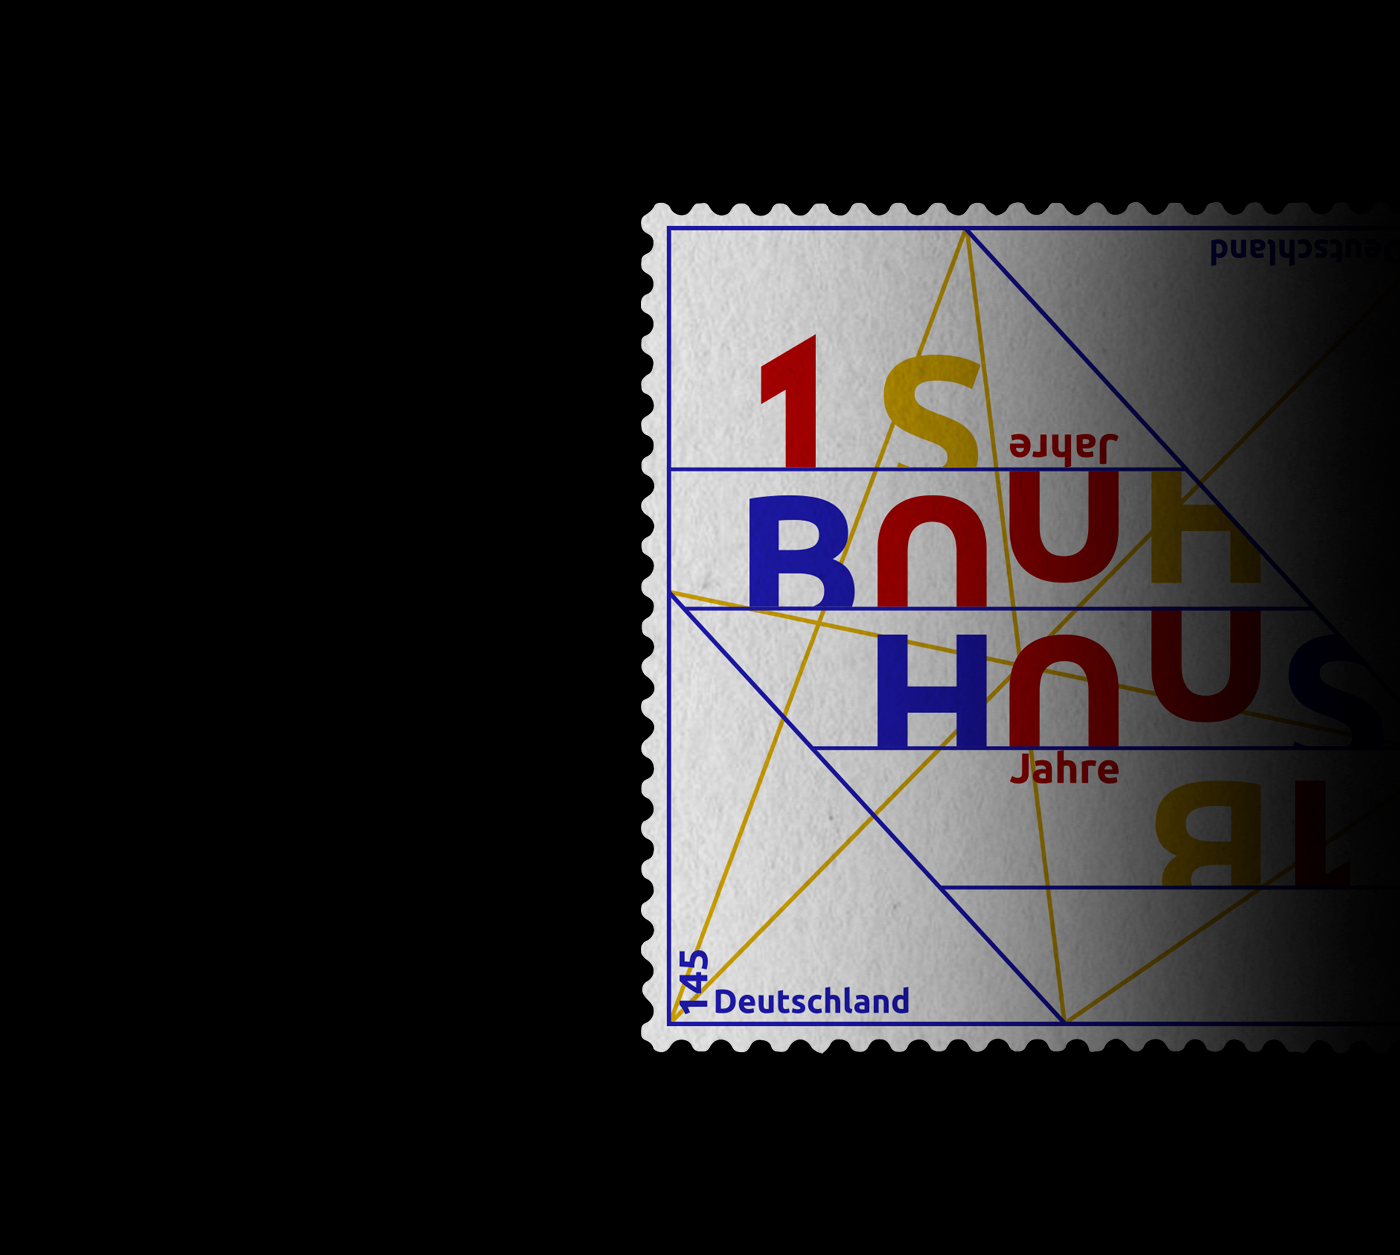 bauhaus 100 YEARS BAUHAUS 100 jahre bauhaus walter gropius weimar germany art school briefmarke postage stamp stamp